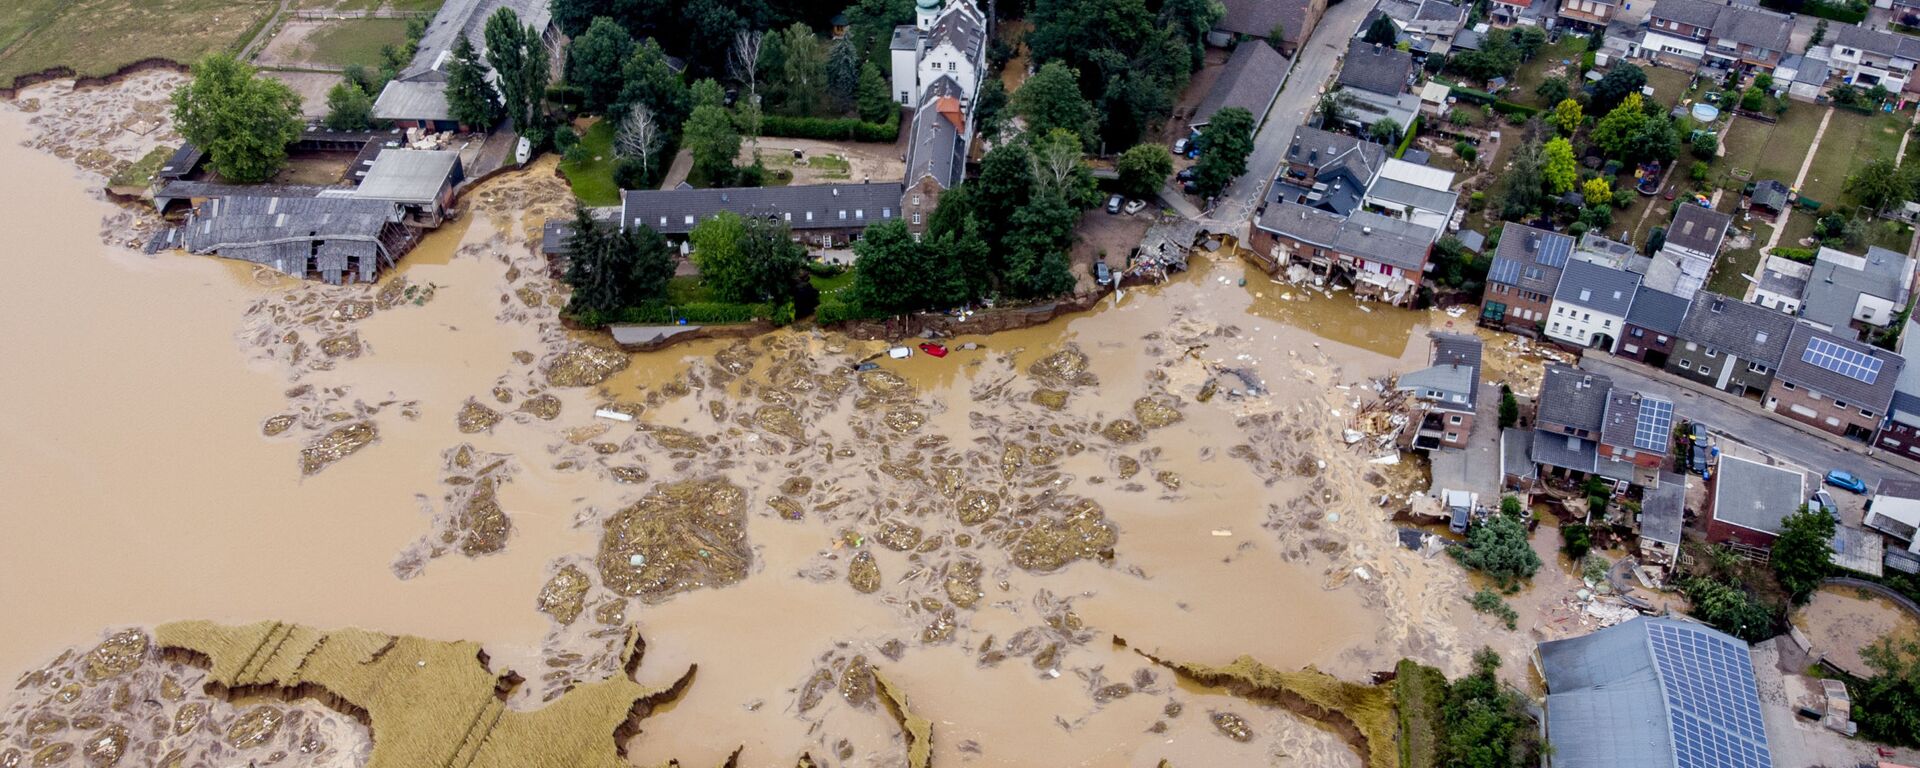 قلعة أثرية دمرت إثر فيضان ضخم أصاب مدينة إرفتشتات، ألمانيا 17 يوليو 2021 - سبوتنيك عربي, 1920, 18.06.2022